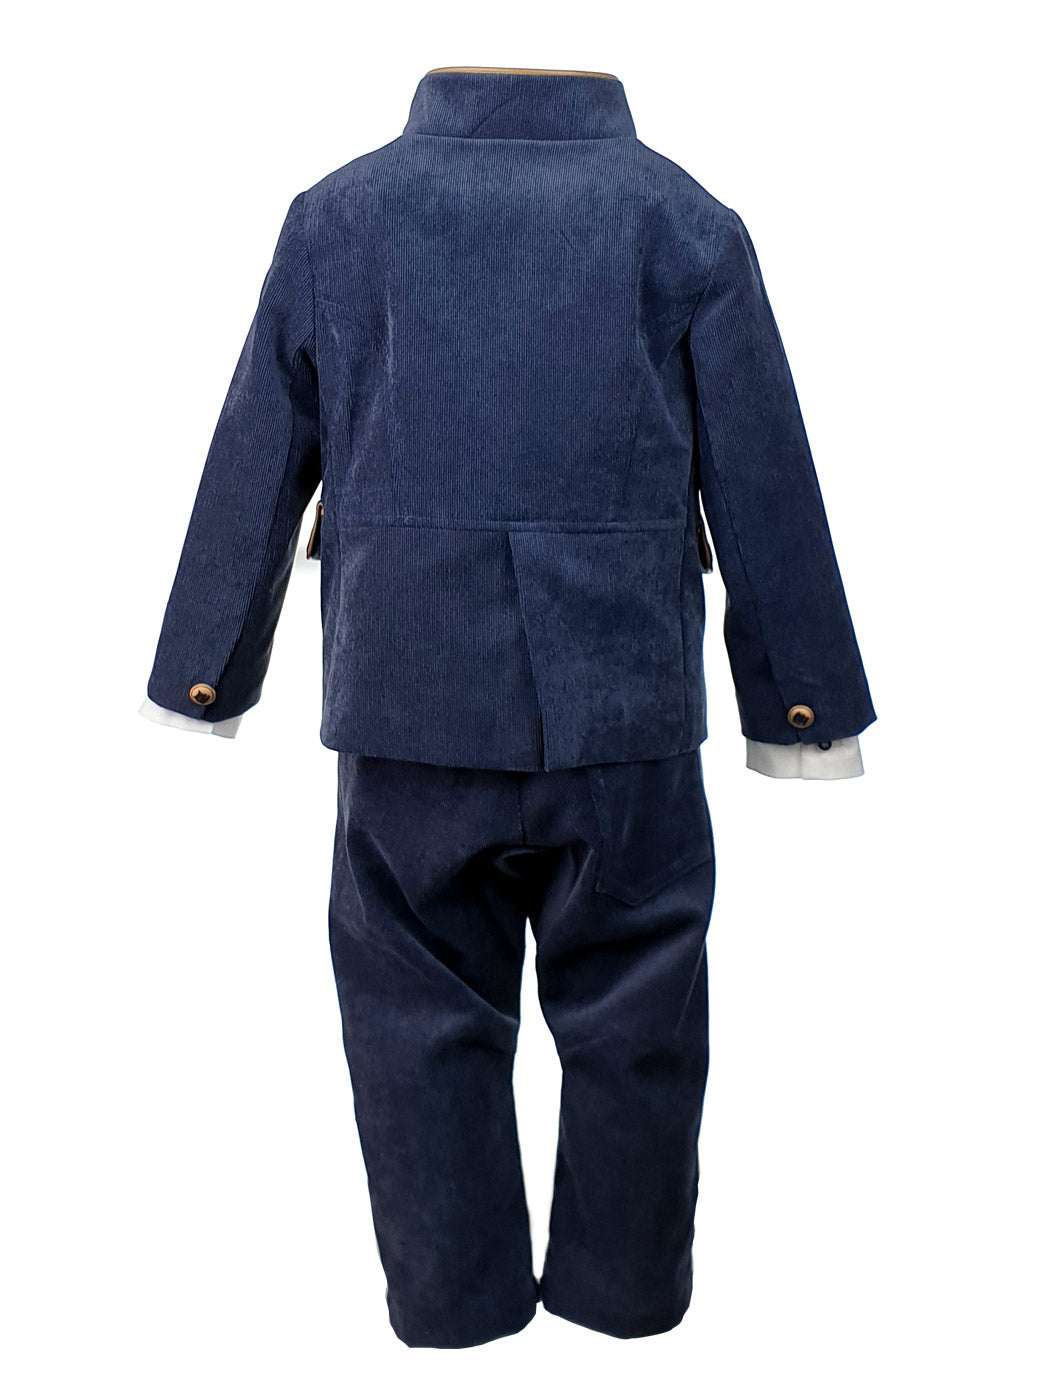 Βαπτιστικό κοτλέ κοστούμι για αγόρι 6τεμ.- JOGGI